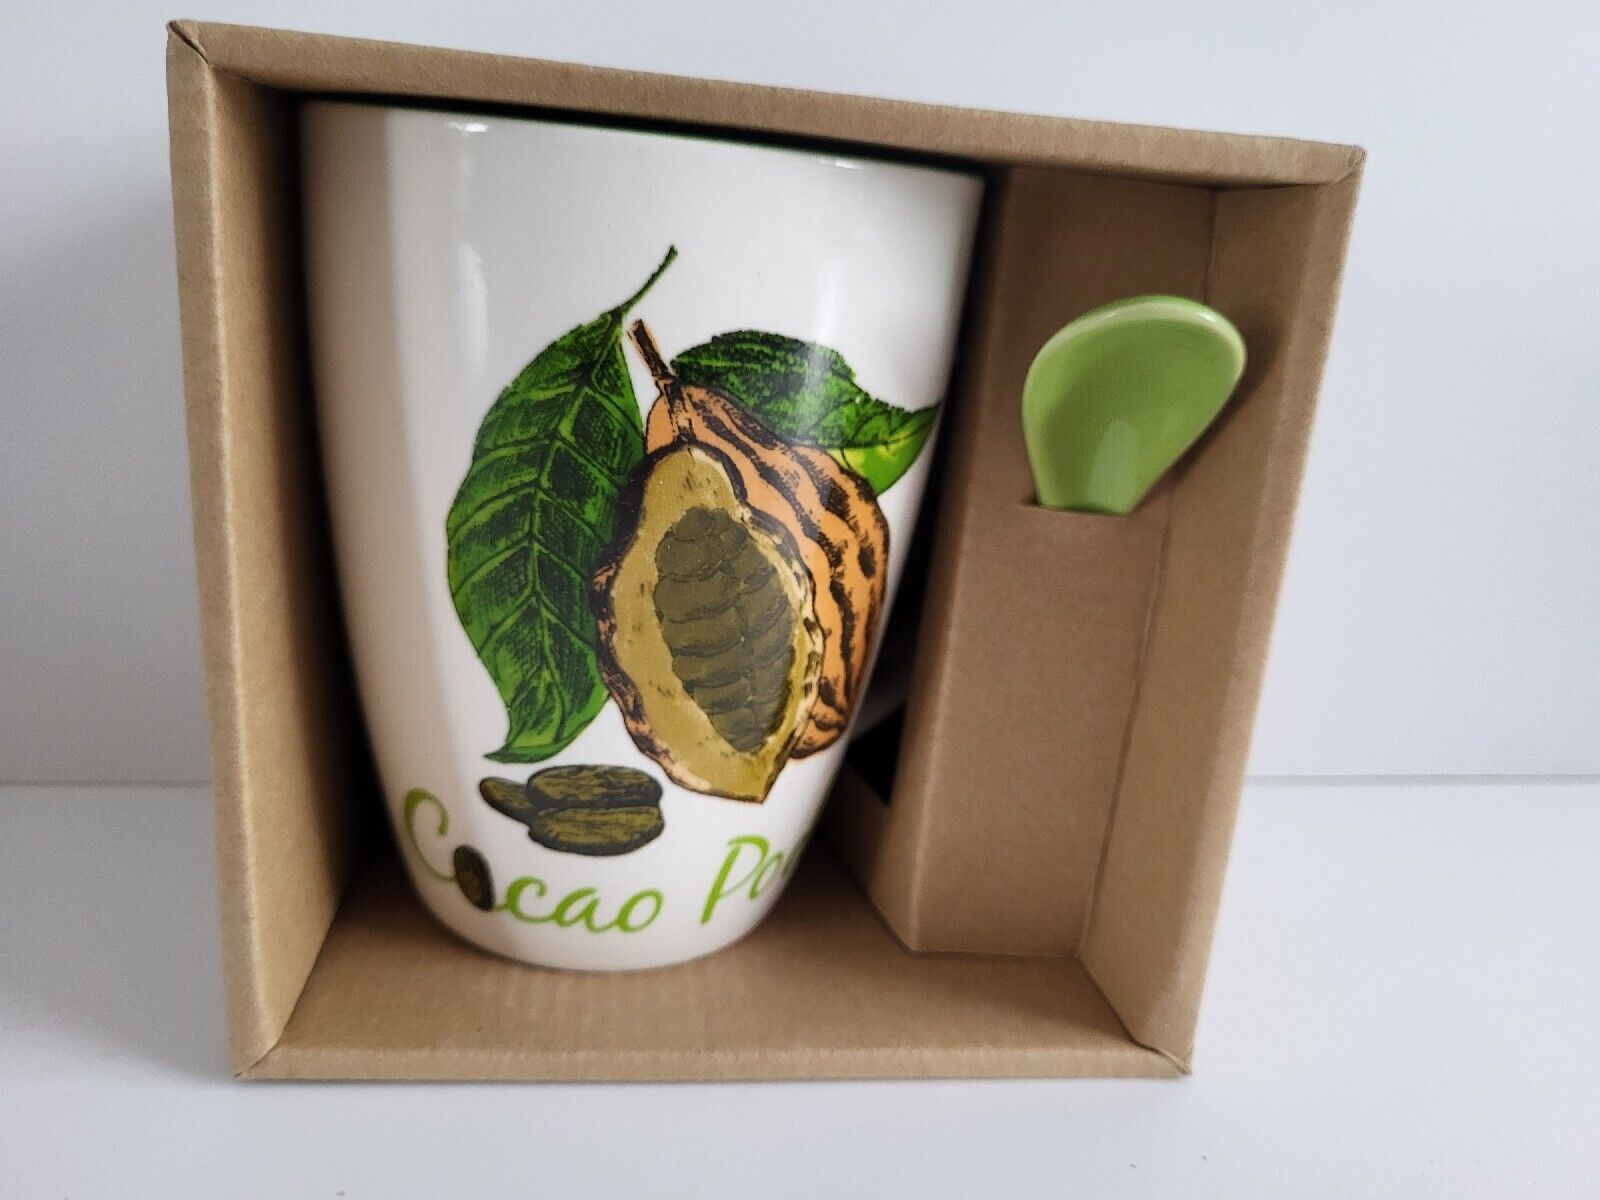 National Nutrition Coffee Mug & Spoon Cacao Pods With Original Box